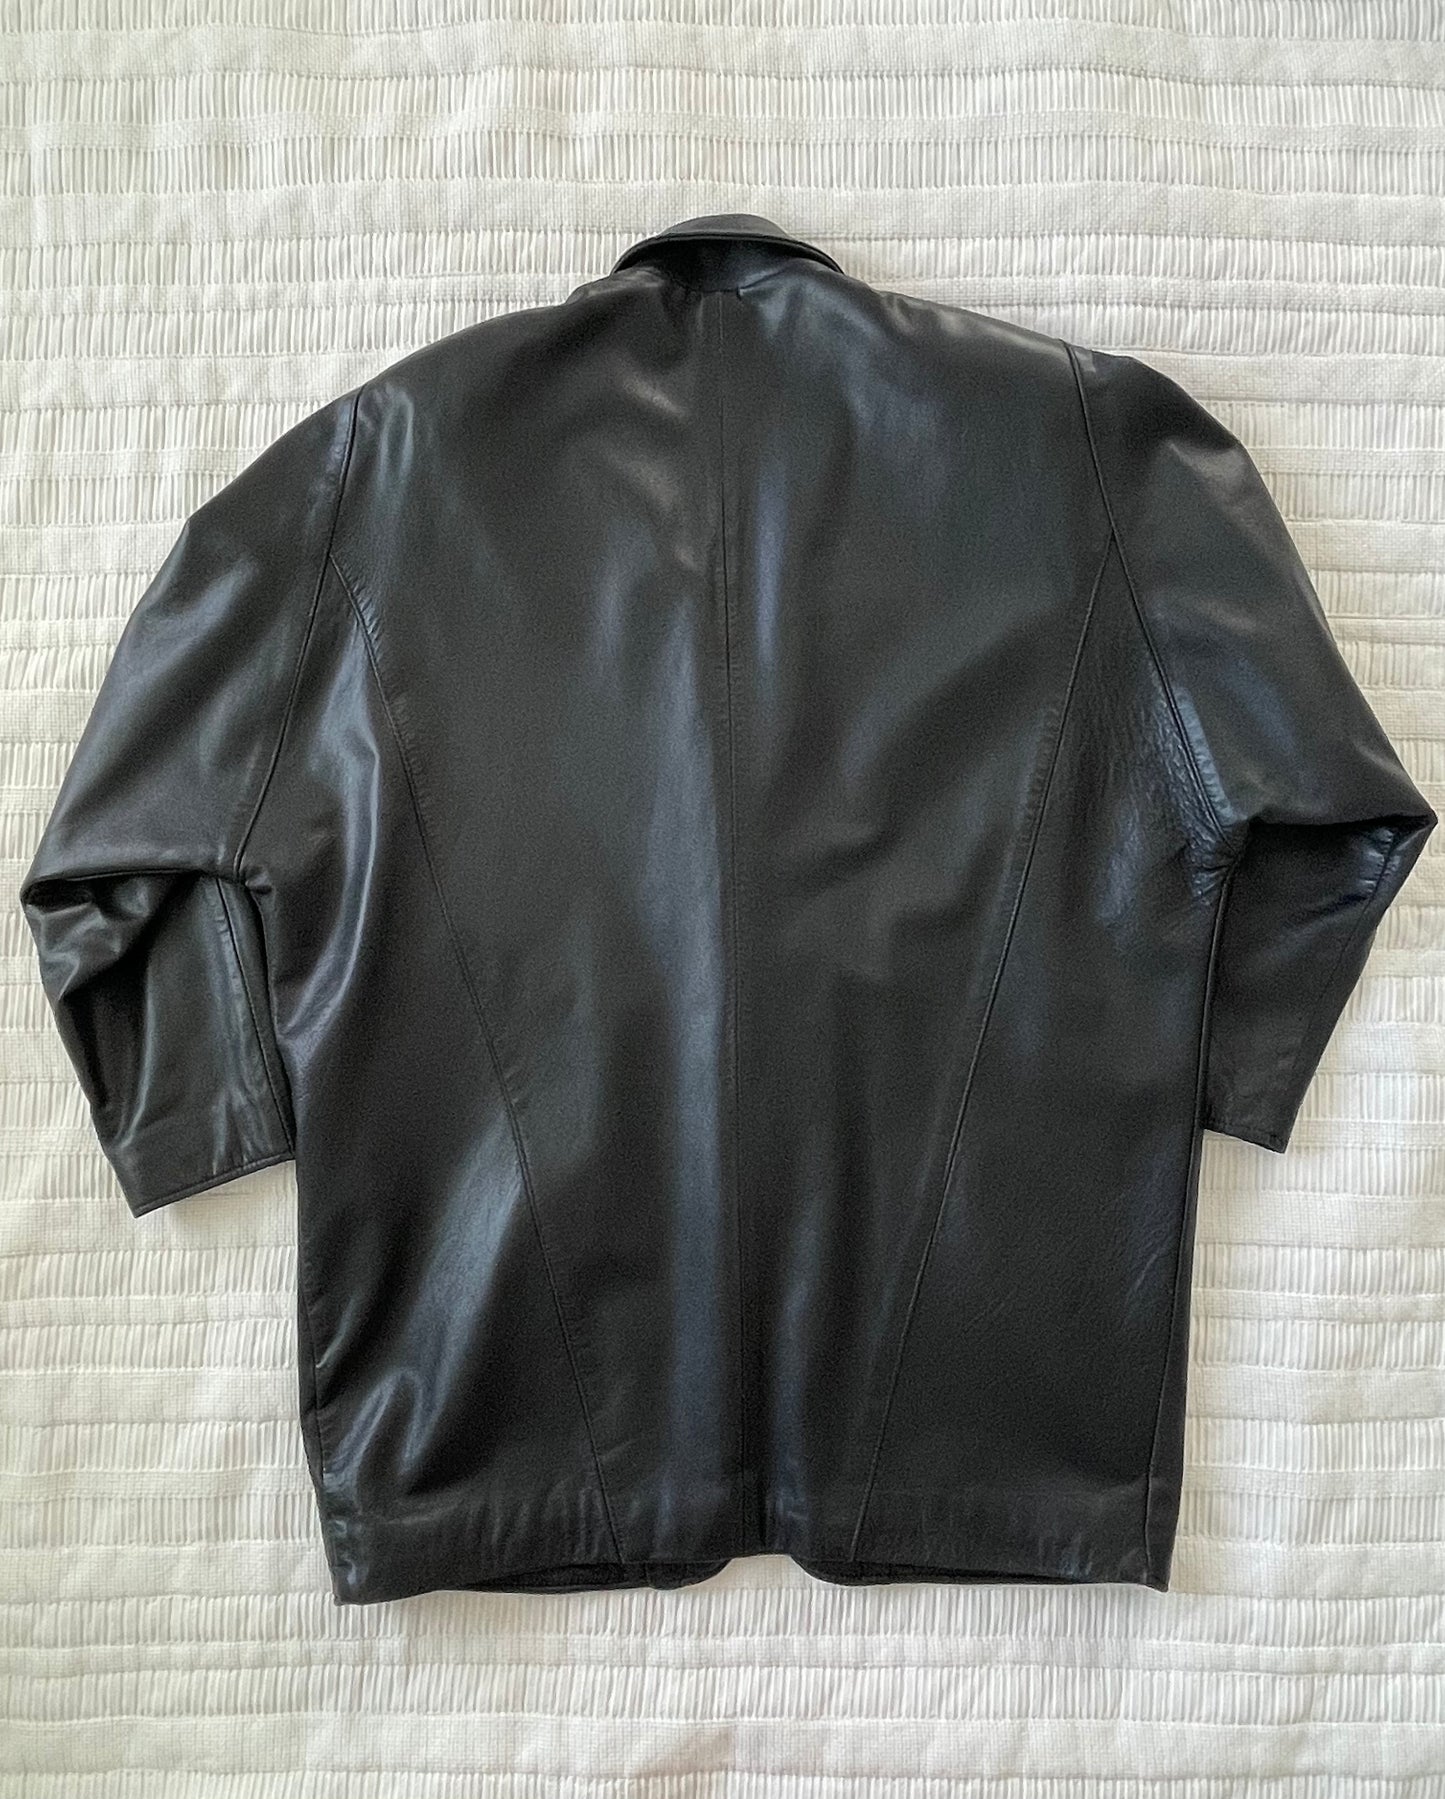 Leather Black  blazer style jacket